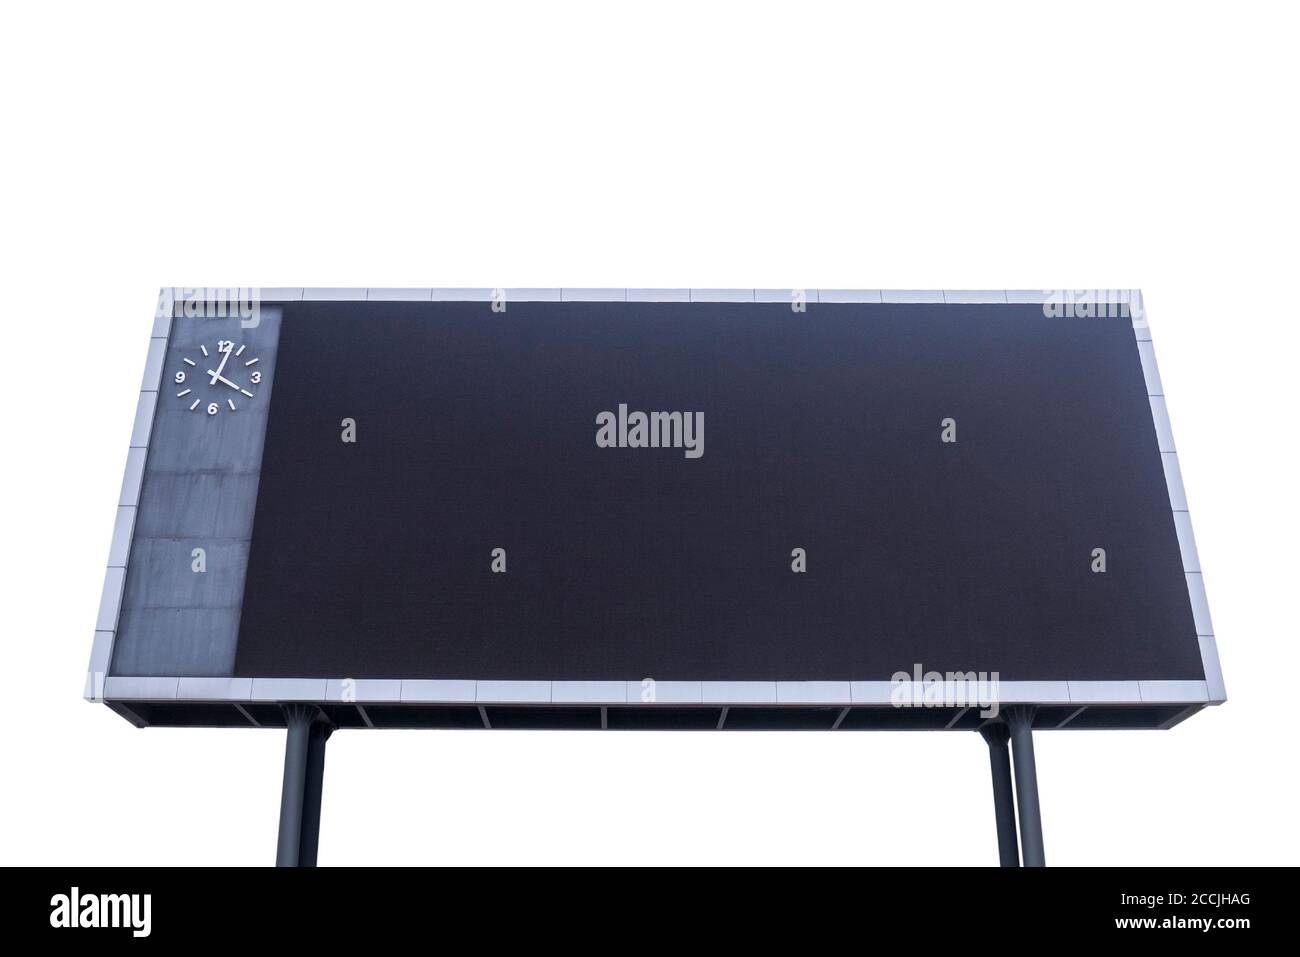 Tableau de bord avec écran noir vierge pour signaler les événements sportifs. Arrière-plan blanc isolé Banque D'Images